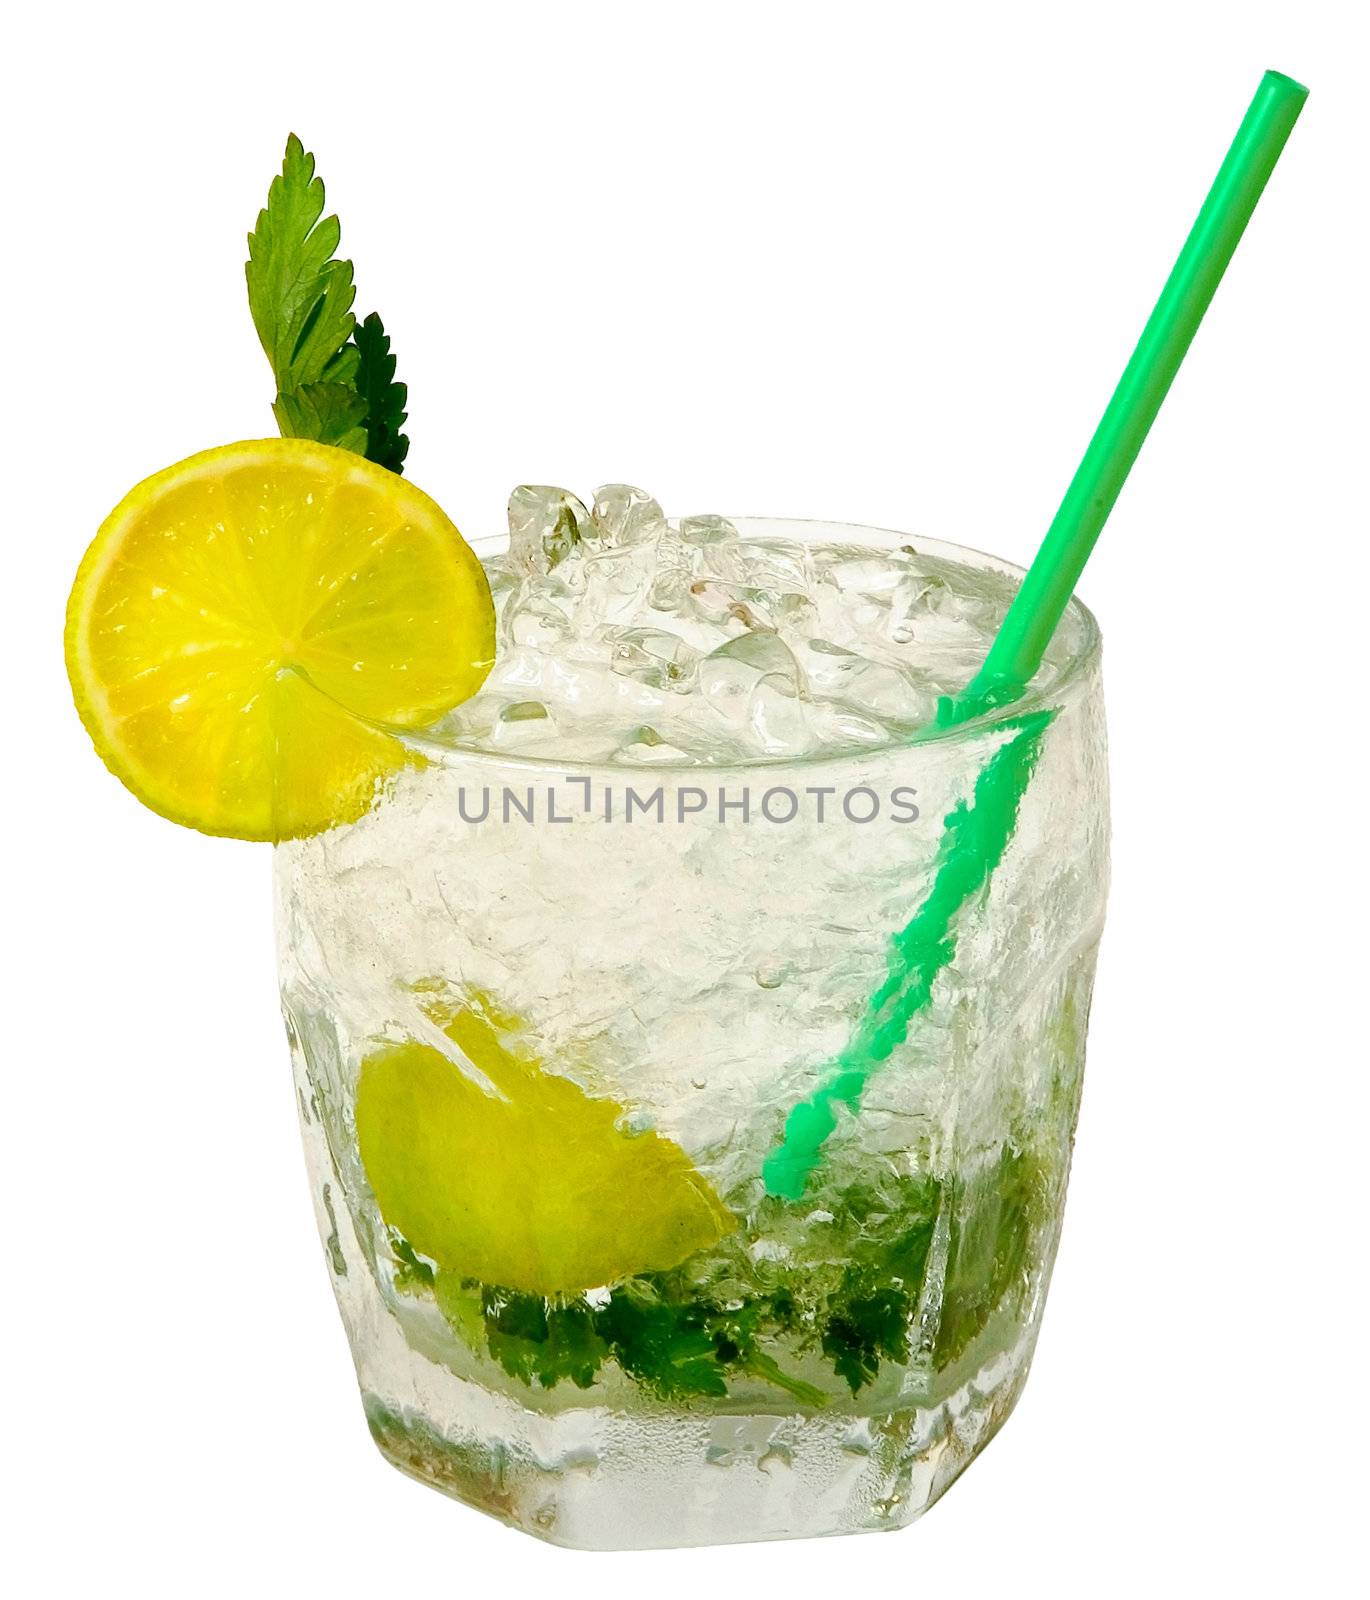 Lemon shake with ice, isolated on a white background